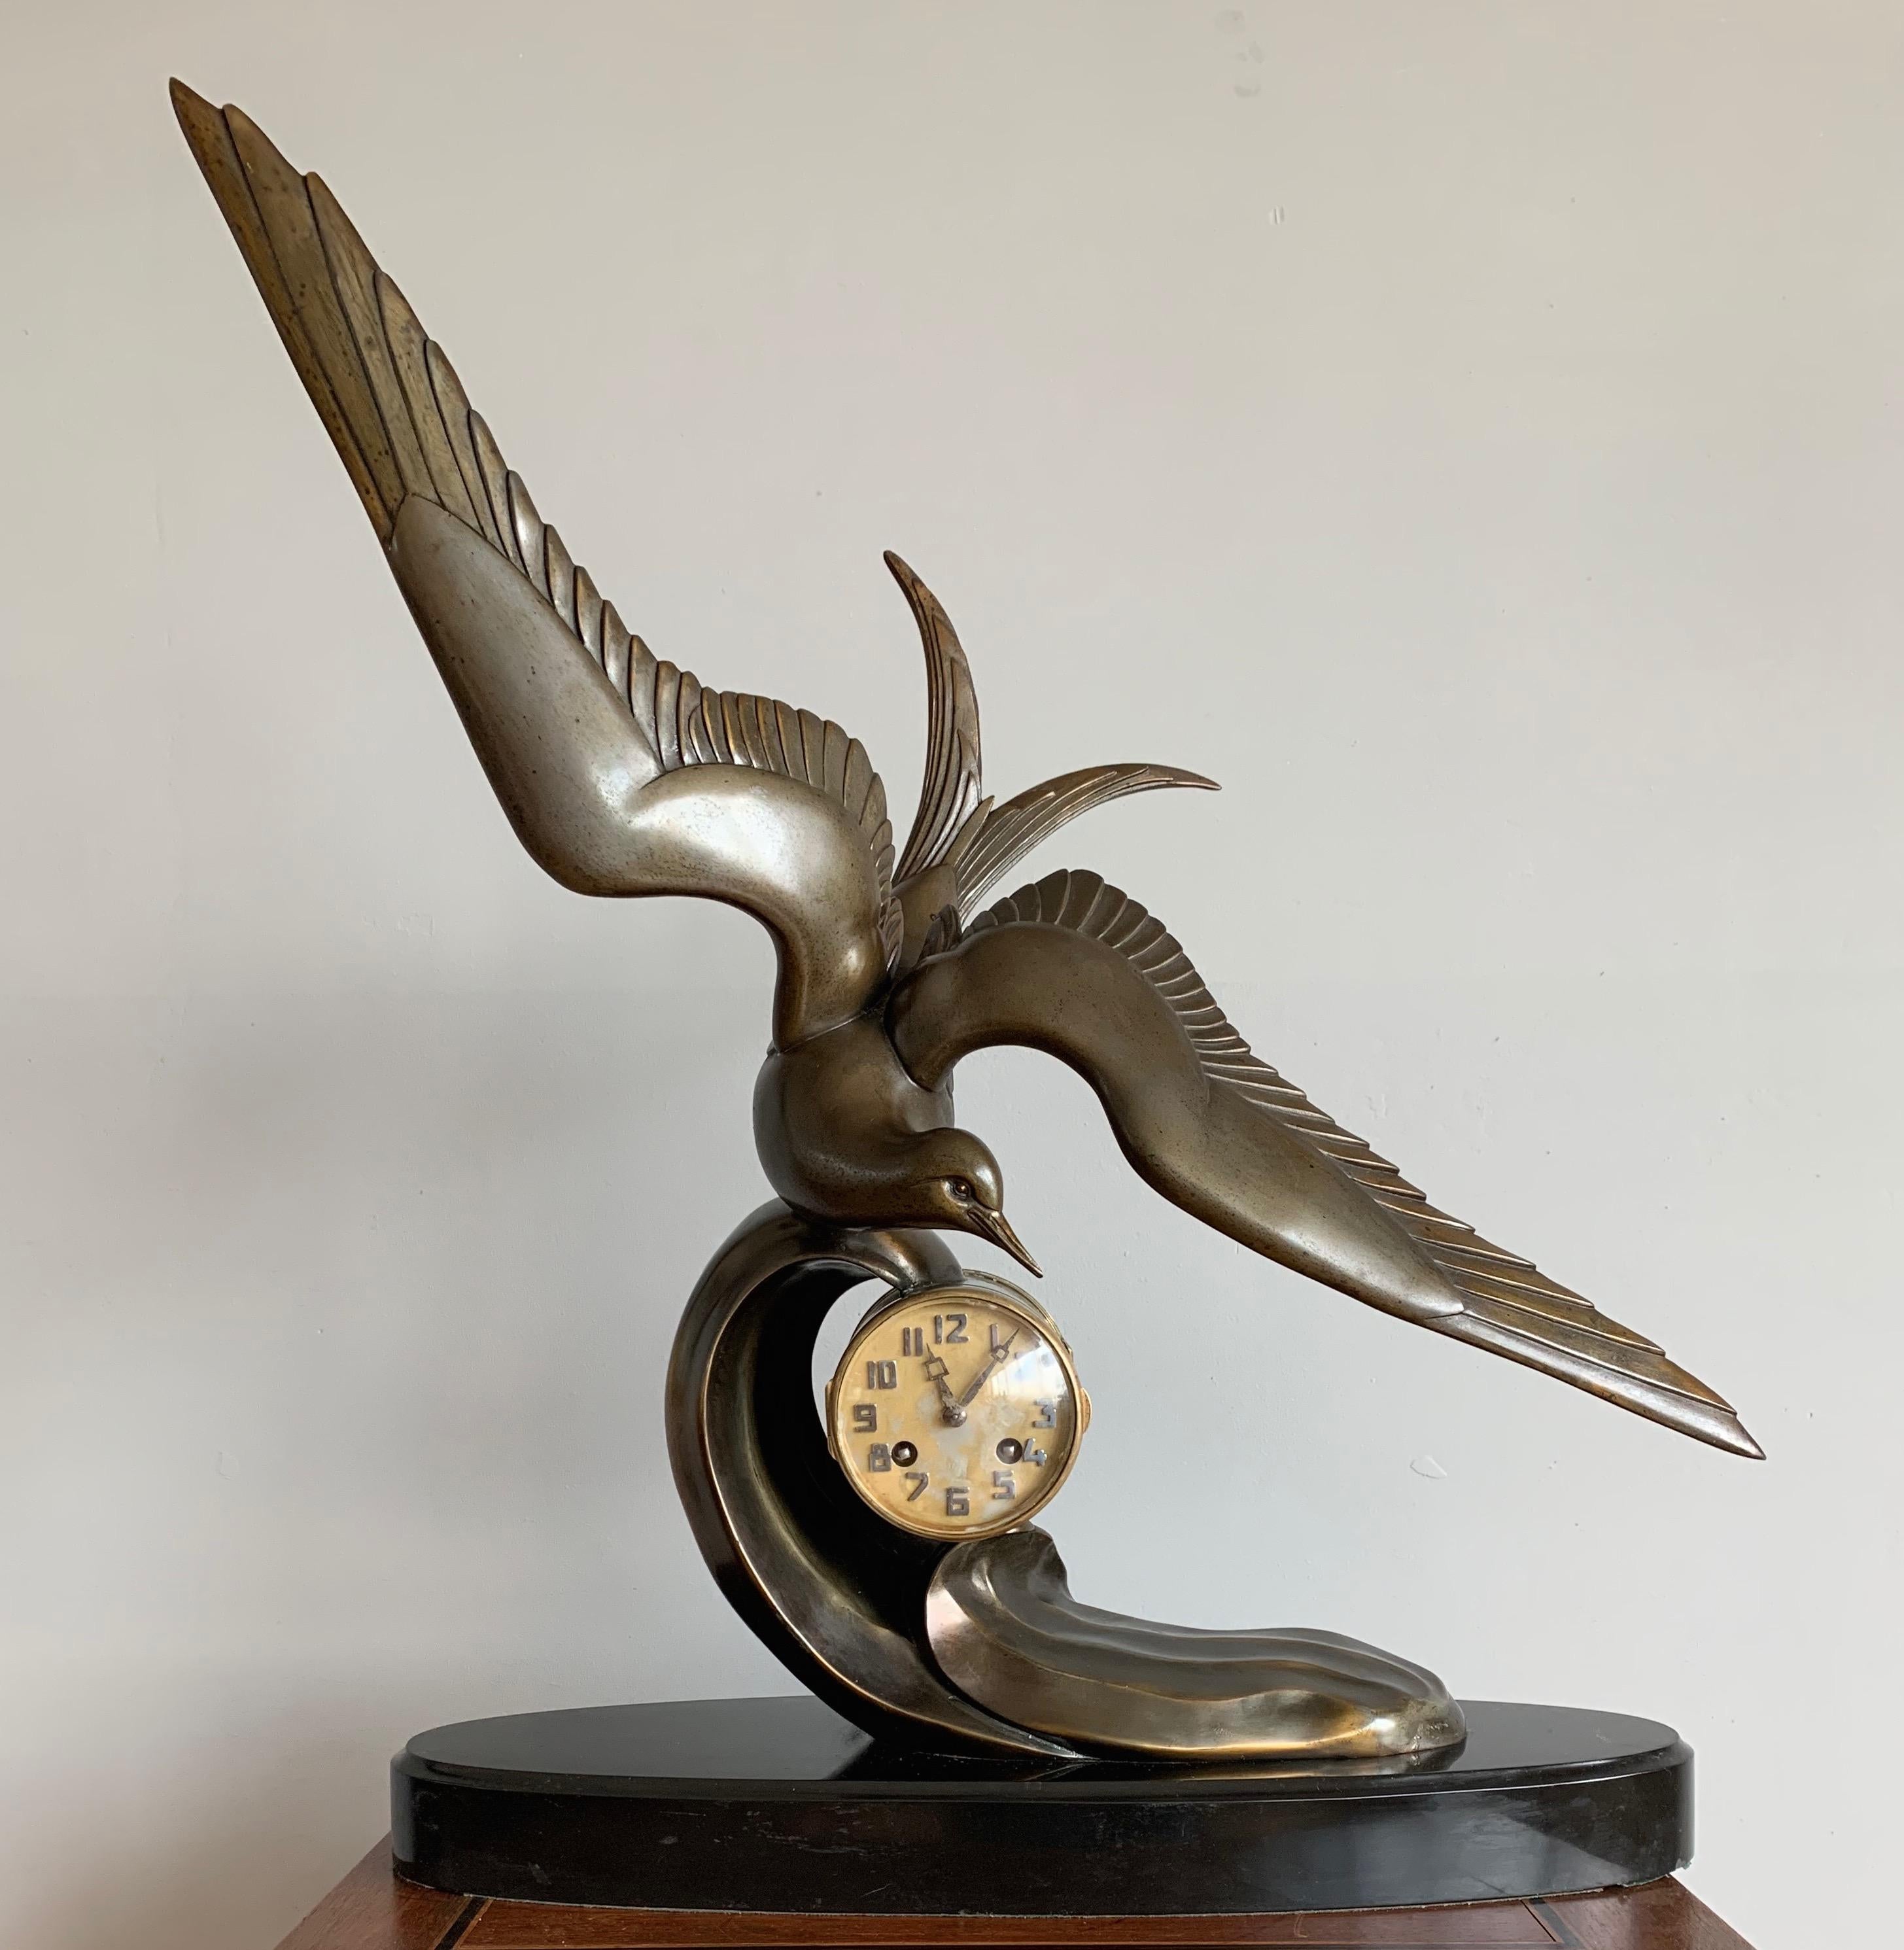 Cette horloge en marbre noir et hirondelle bronzée est l'un de nos achats préférés depuis le début de l'année.

Pour nous, cette horloge de table Art déco française incarne tout ce que la période Art déco représentait. Tout d'abord, ce n'est